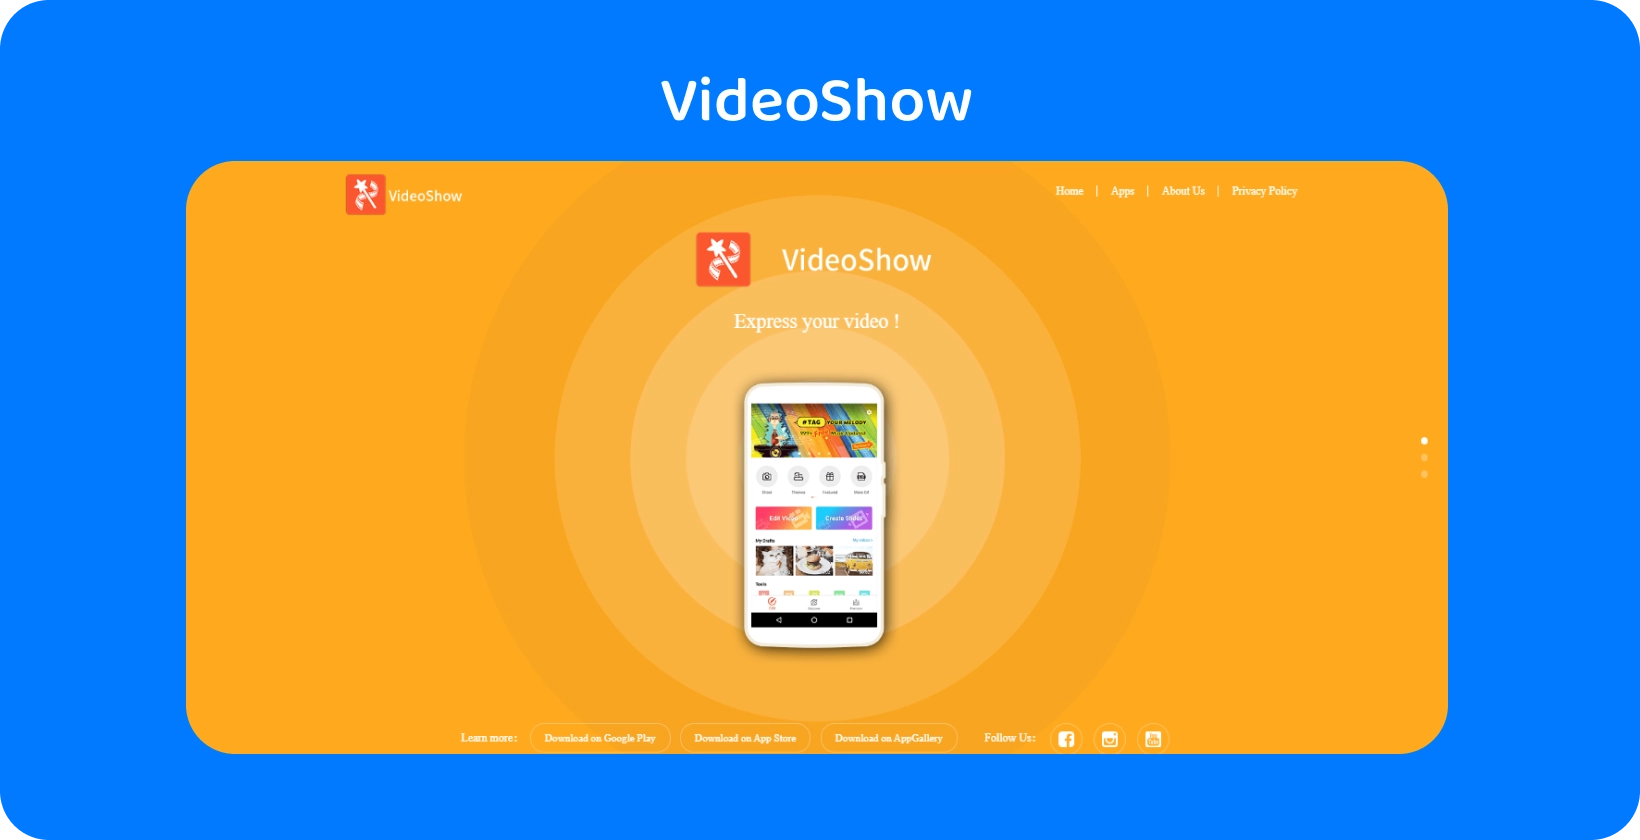 Interfaz de la aplicación VideoShow en una pantalla, que ofrece herramientas y funciones de edición de video sencillas sobre un fondo naranja vibrante.